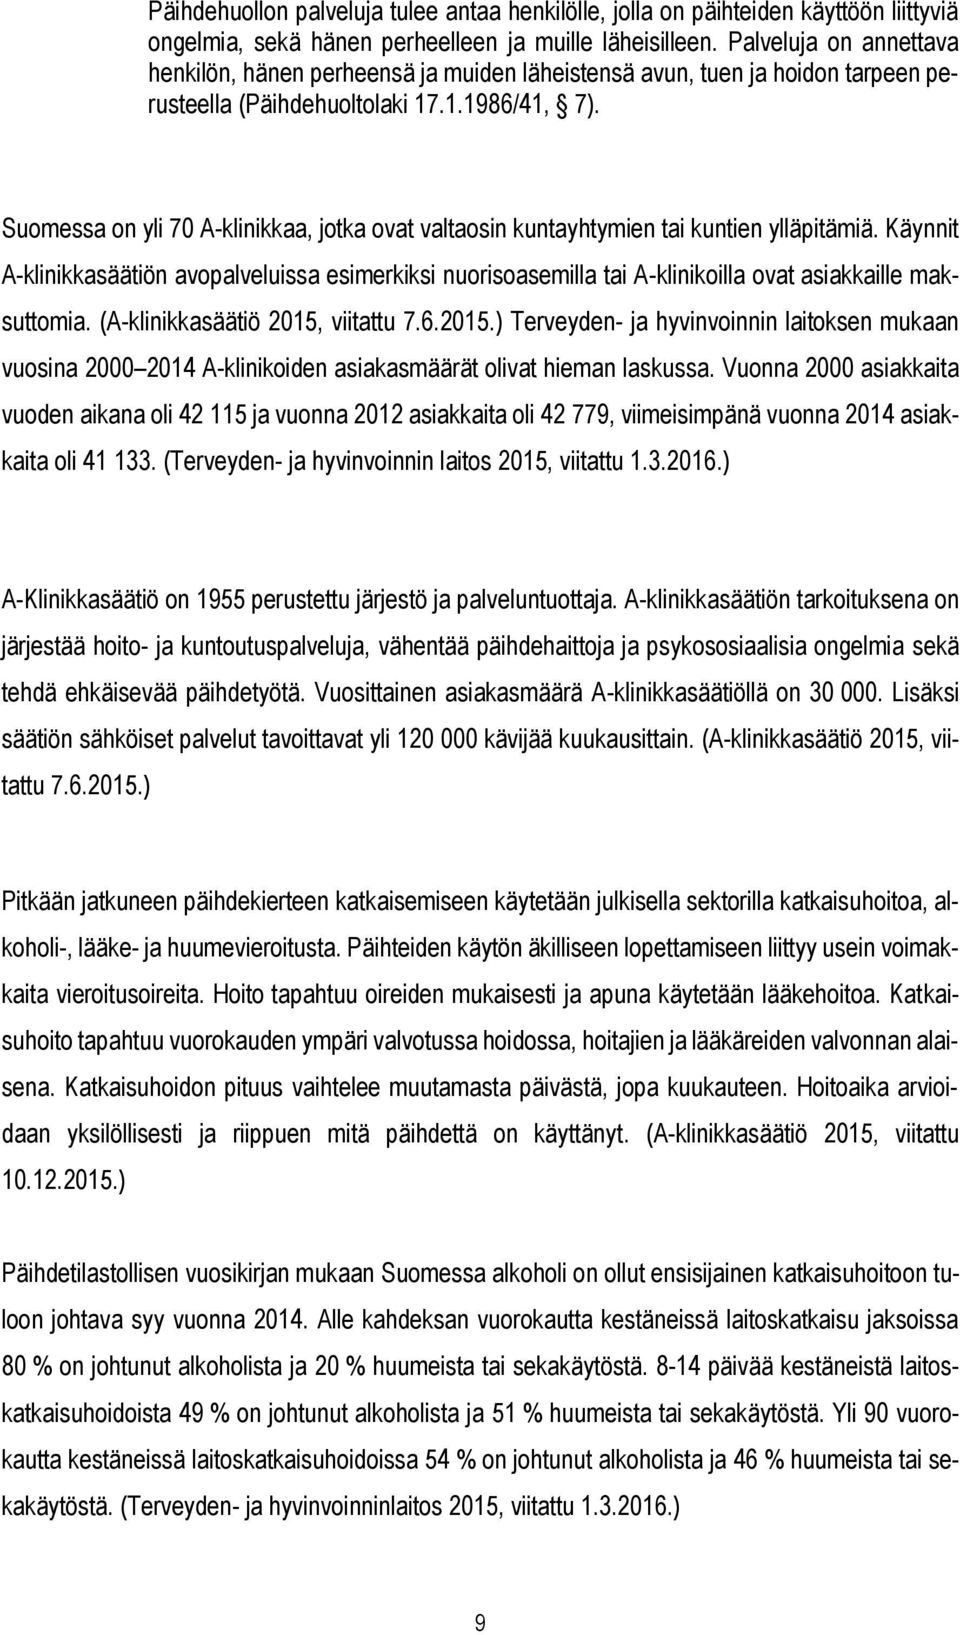 Suomessa on yli 70 A-klinikkaa, jotka ovat valtaosin kuntayhtymien tai kuntien ylläpitämiä.